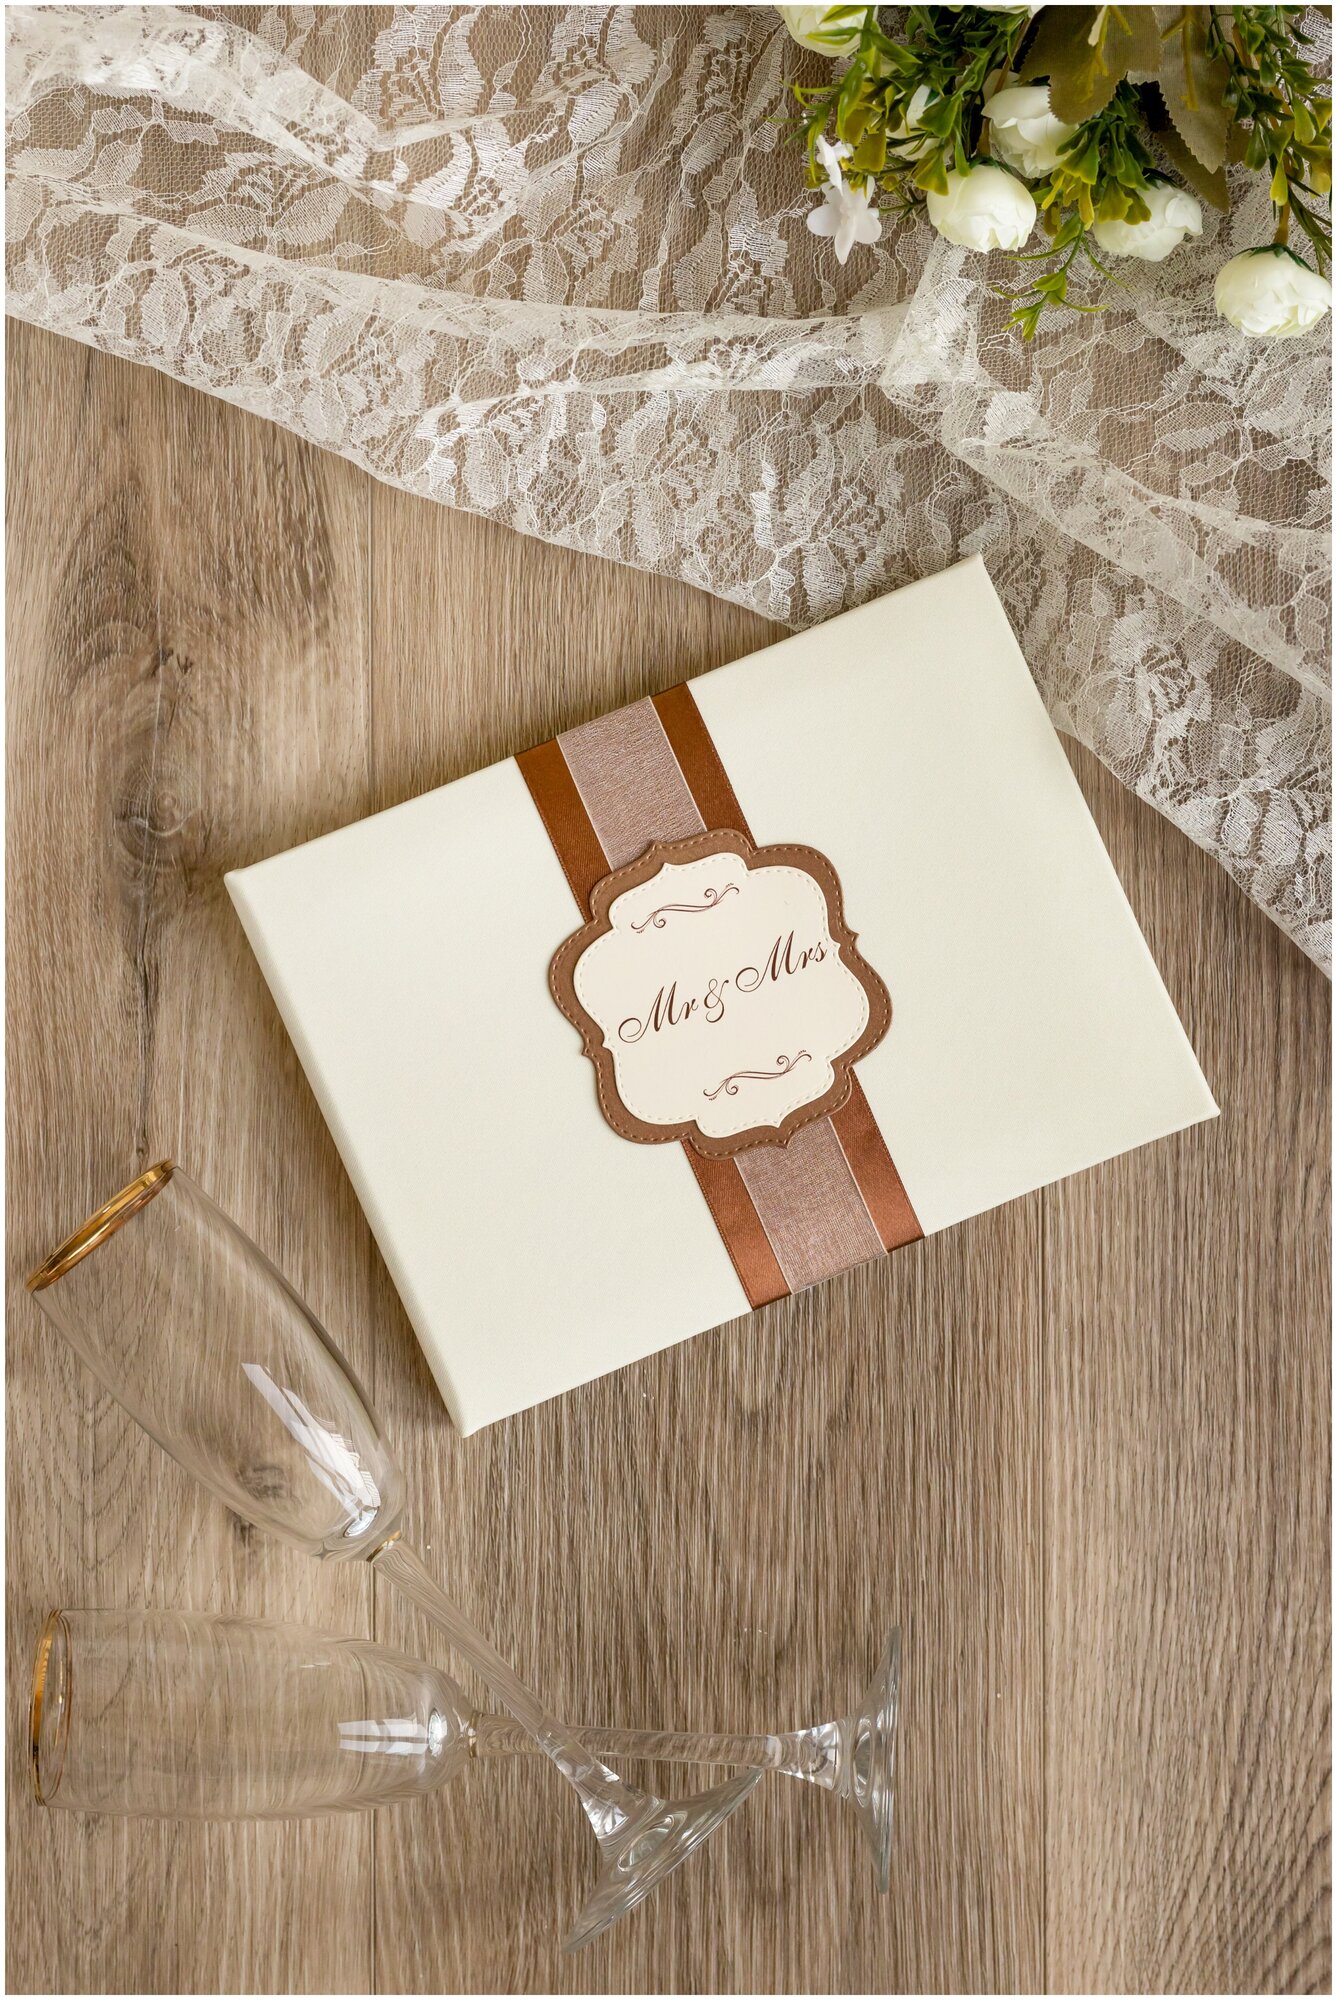 Книга свадебных пожеланий "Французская ваниль" цвета слоновой кости с коричневой лентой из атласа и фигурной табличкой на обложке